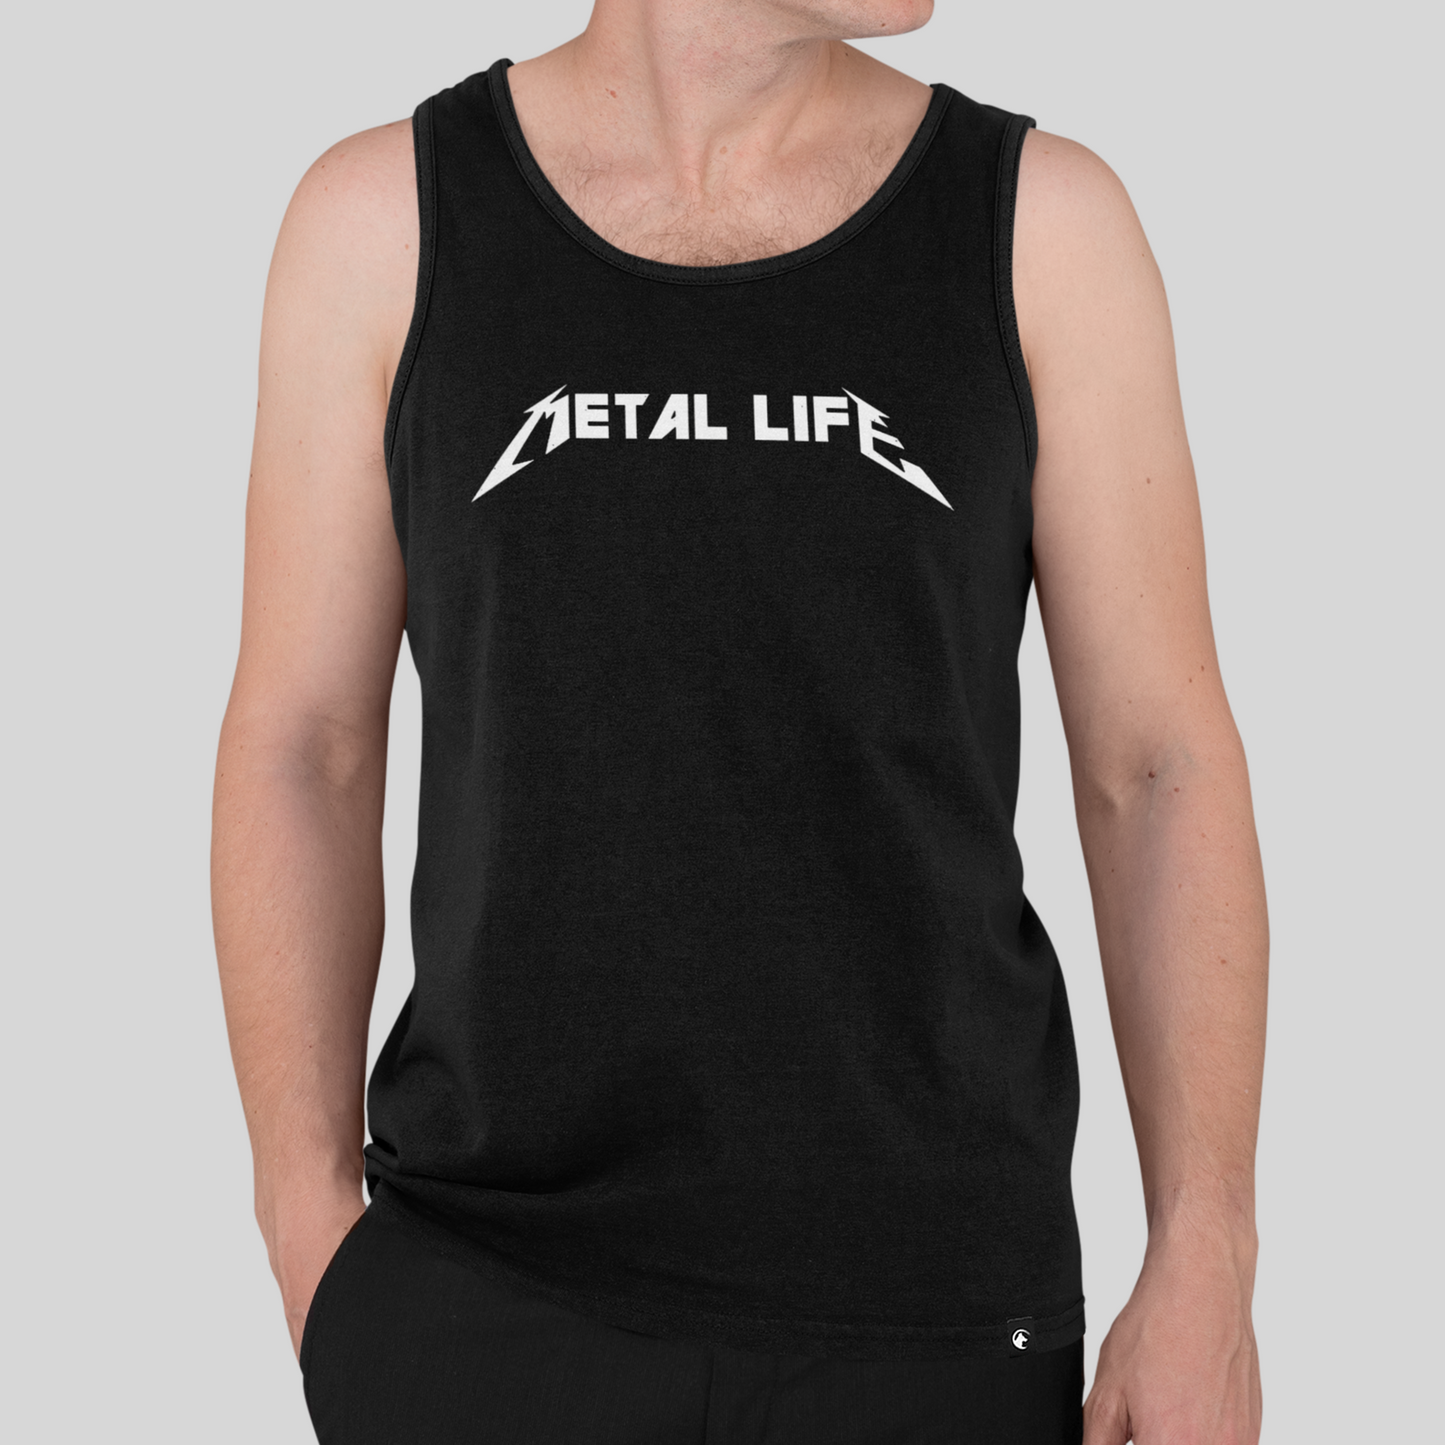 Metal life Vest